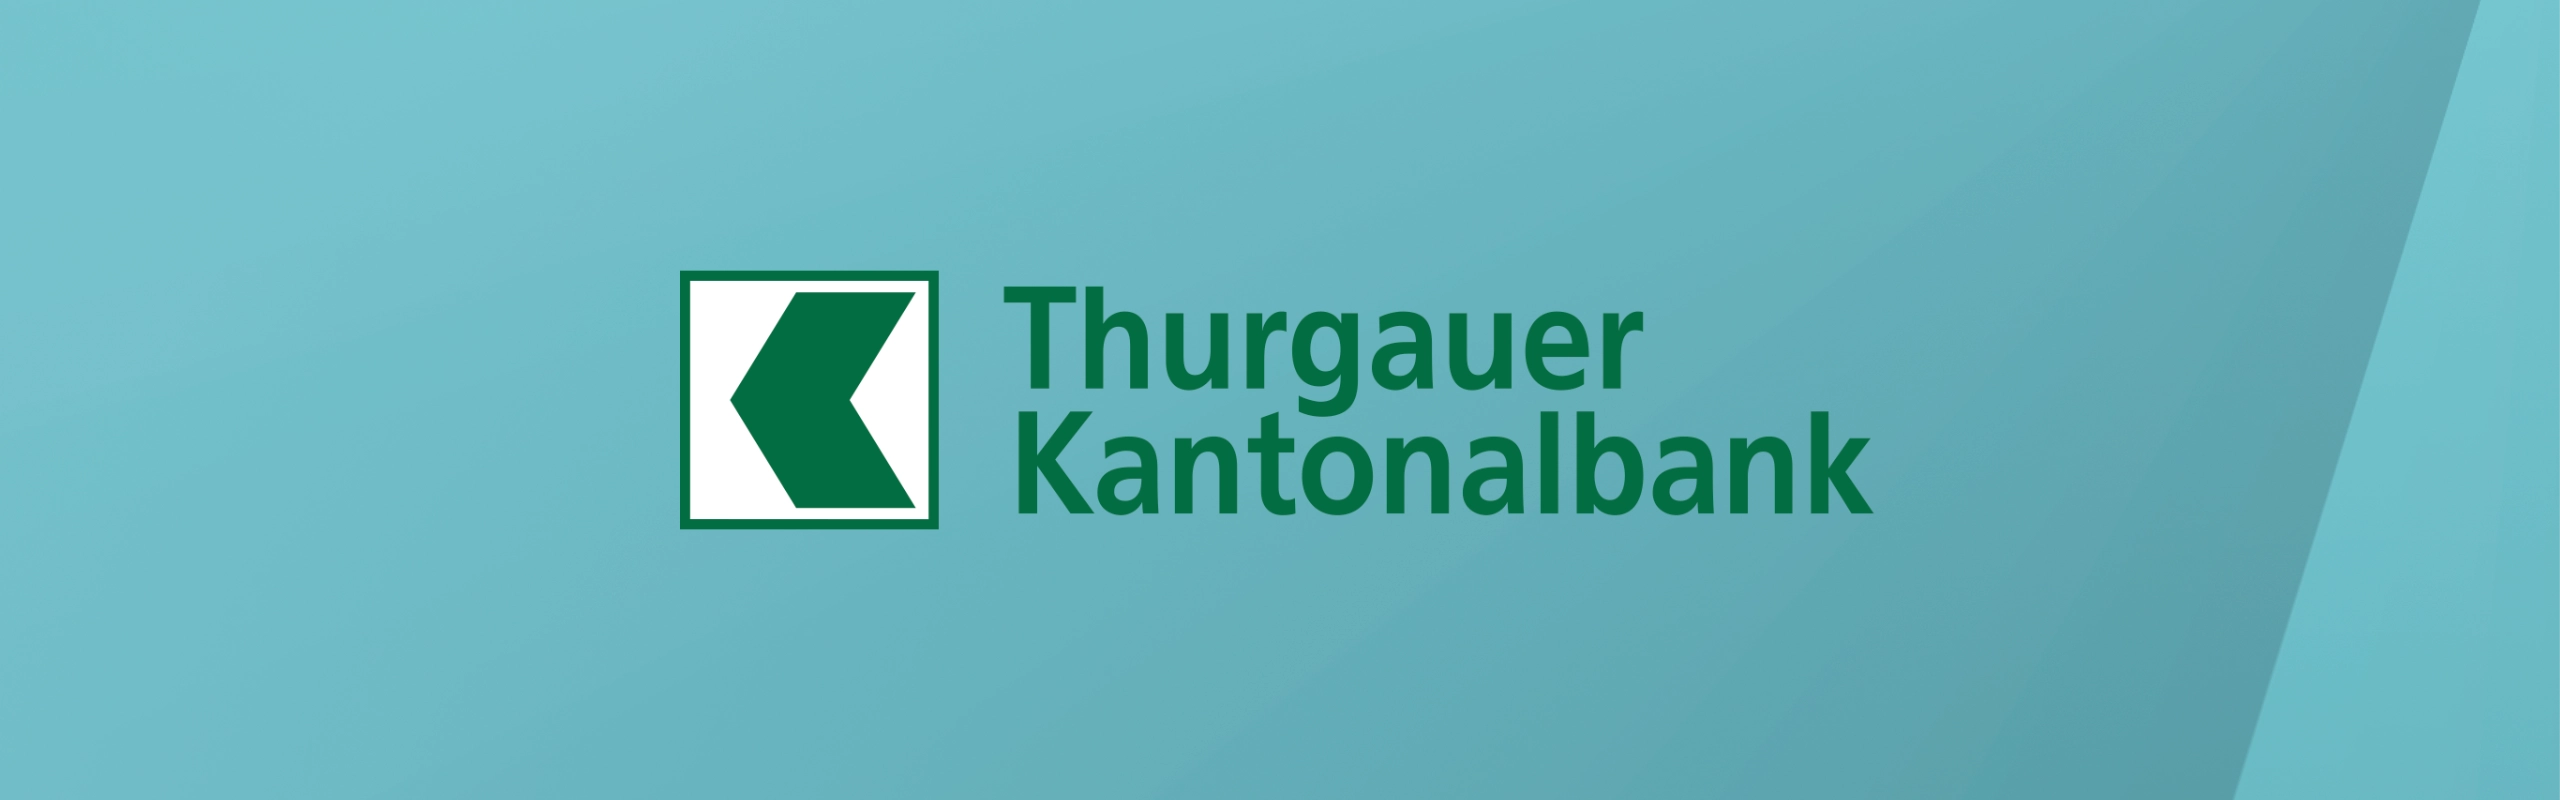 Transaktionen per CSV-Datei von der Thurgauer Kantonalbank importieren